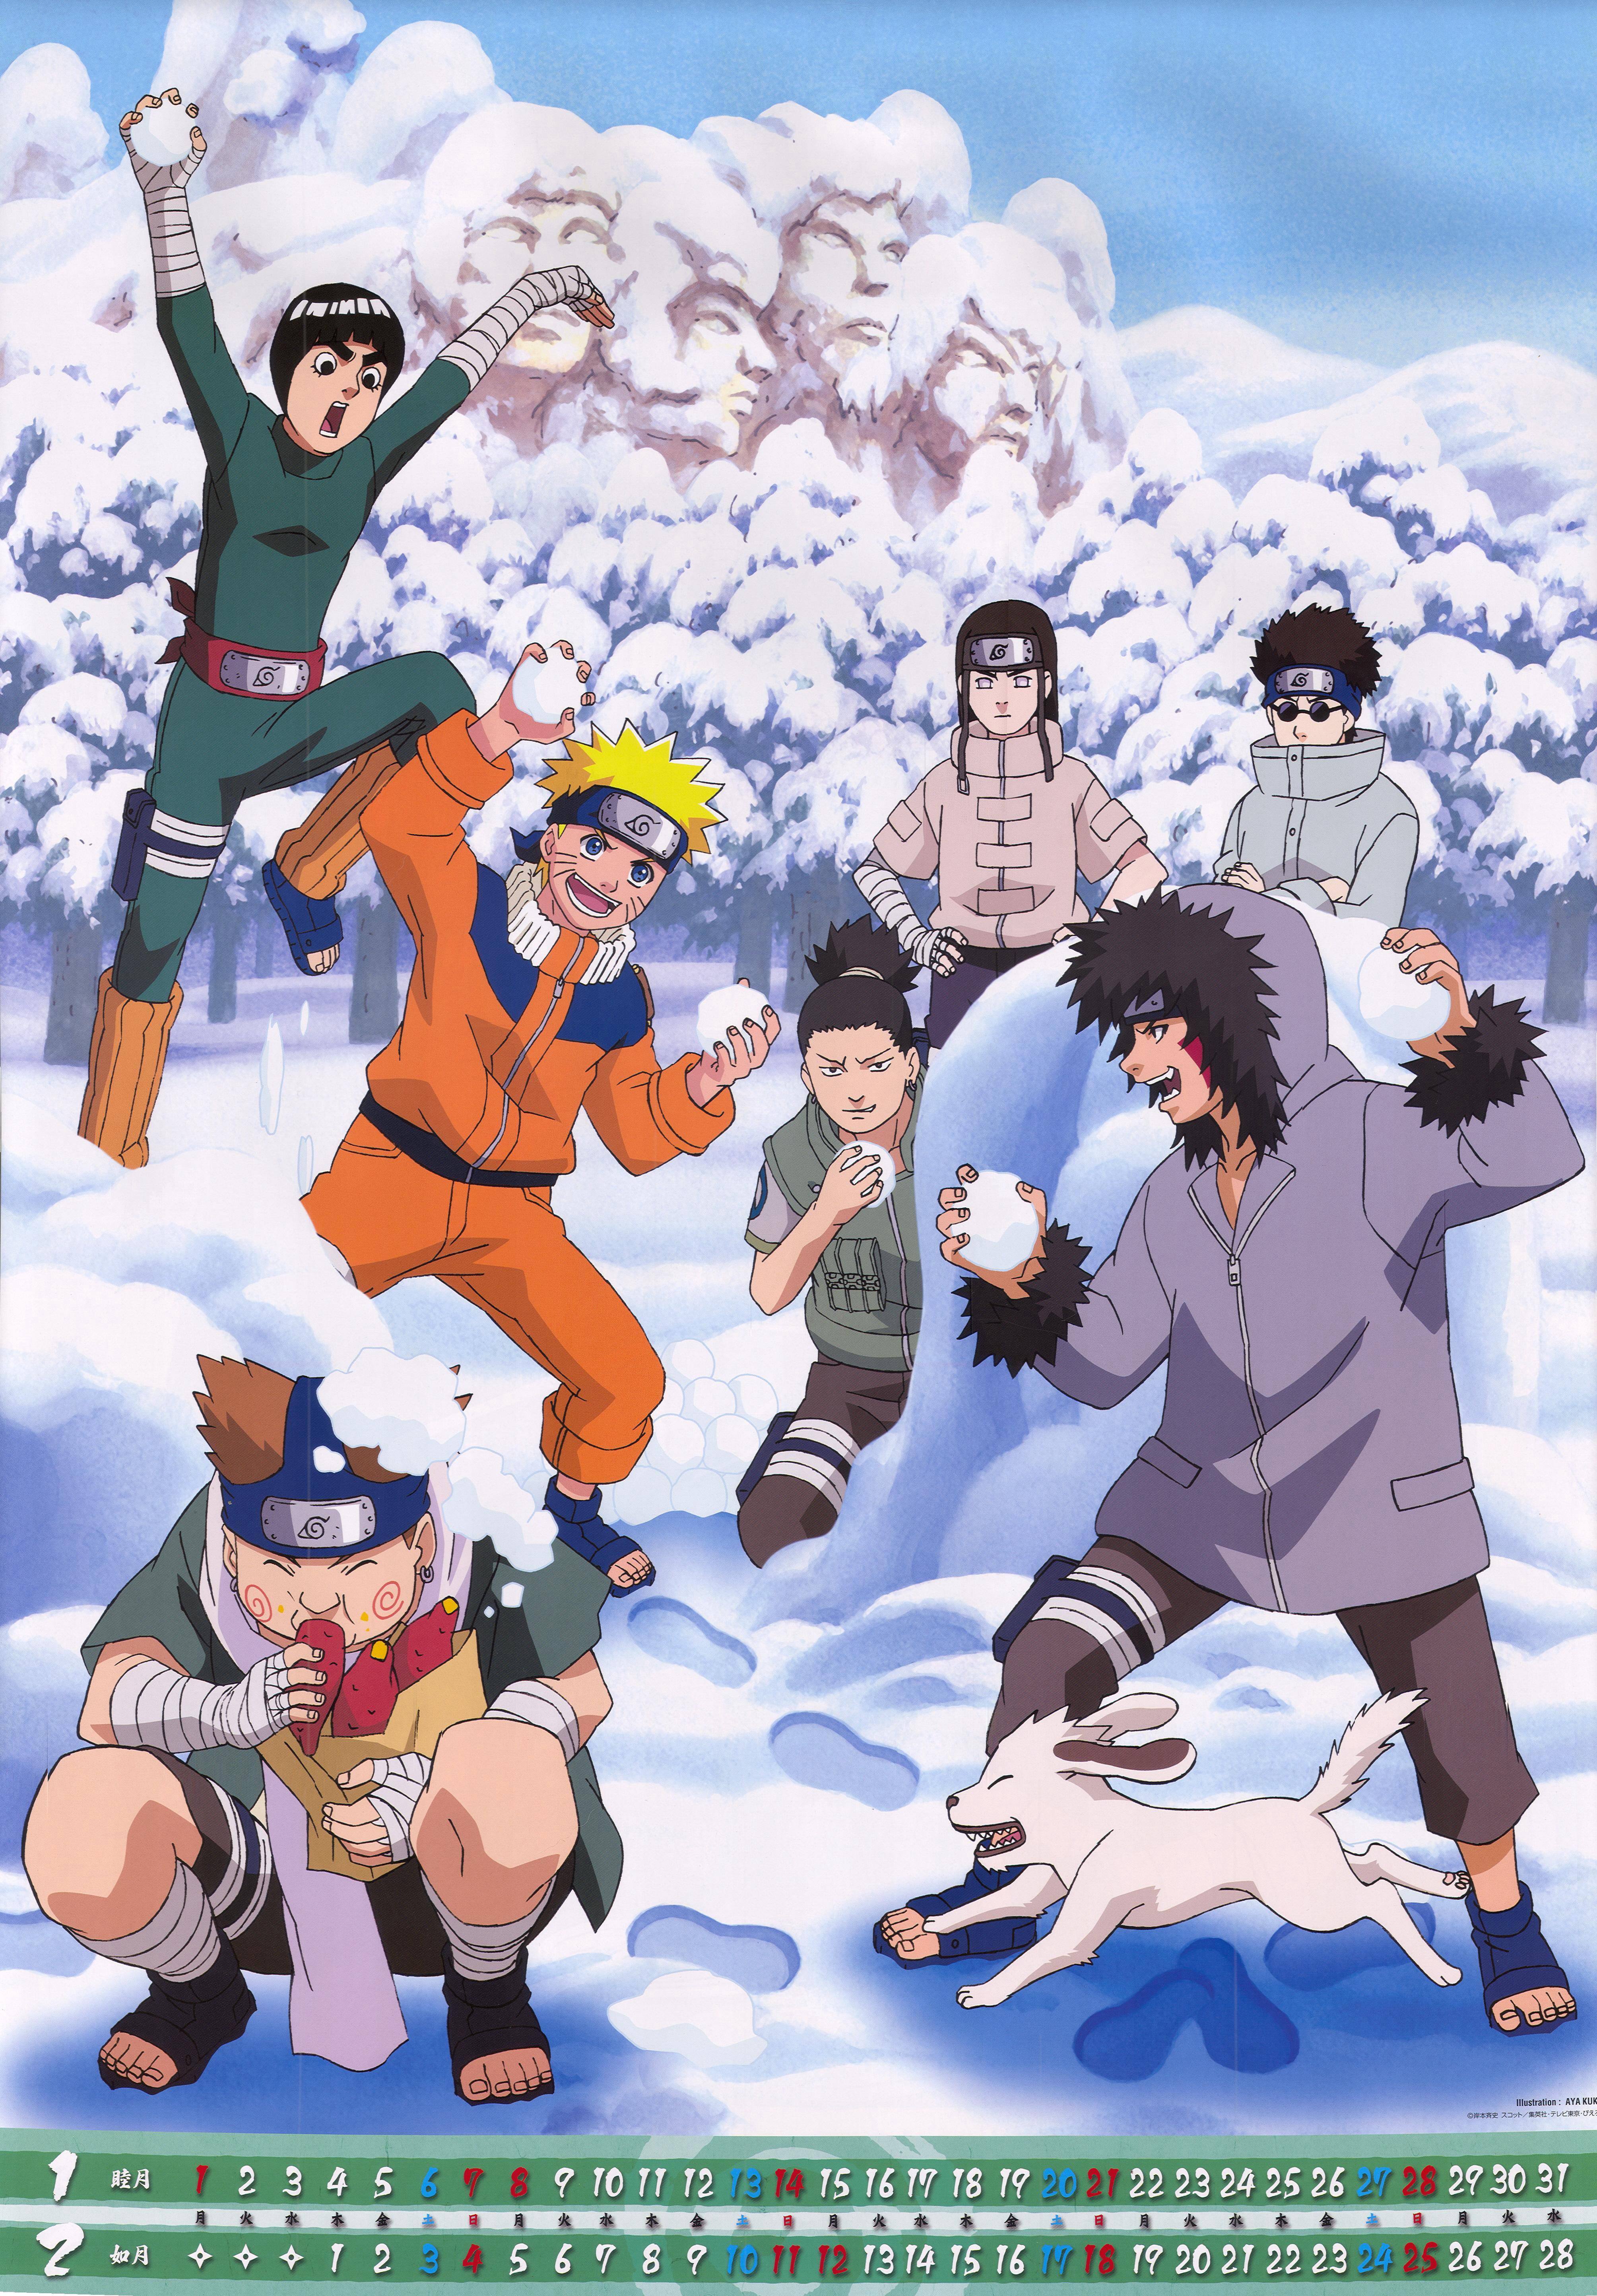 Rock Lee, Shikamaru, Neji, Naruto, Choji, Shino and Kiba